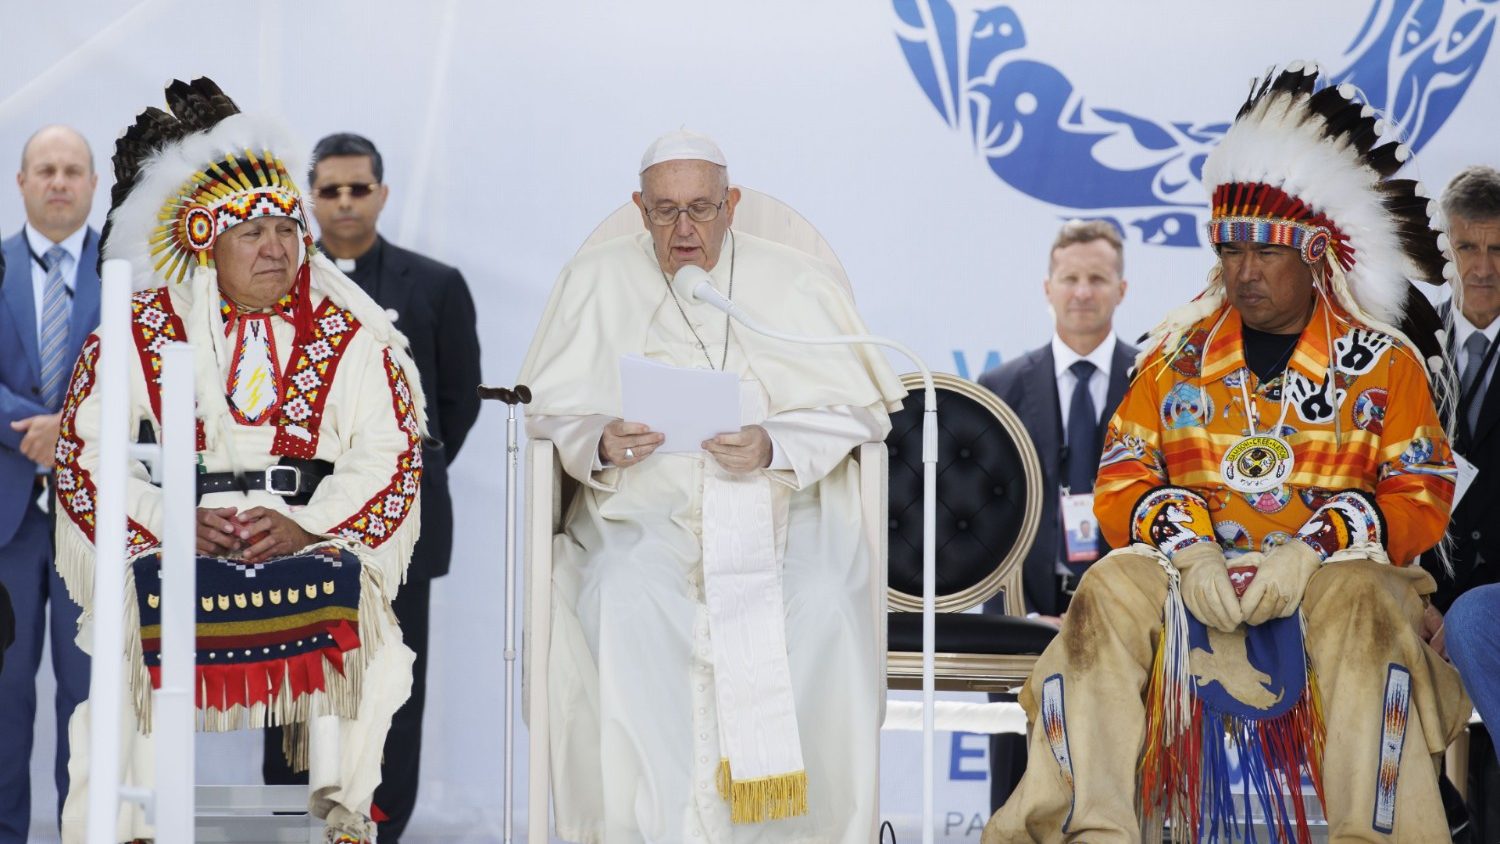 Giáo hội loại bỏ “đạo lý về sự khám phá” và bênh vực quyền của người bản địa - Vatican News